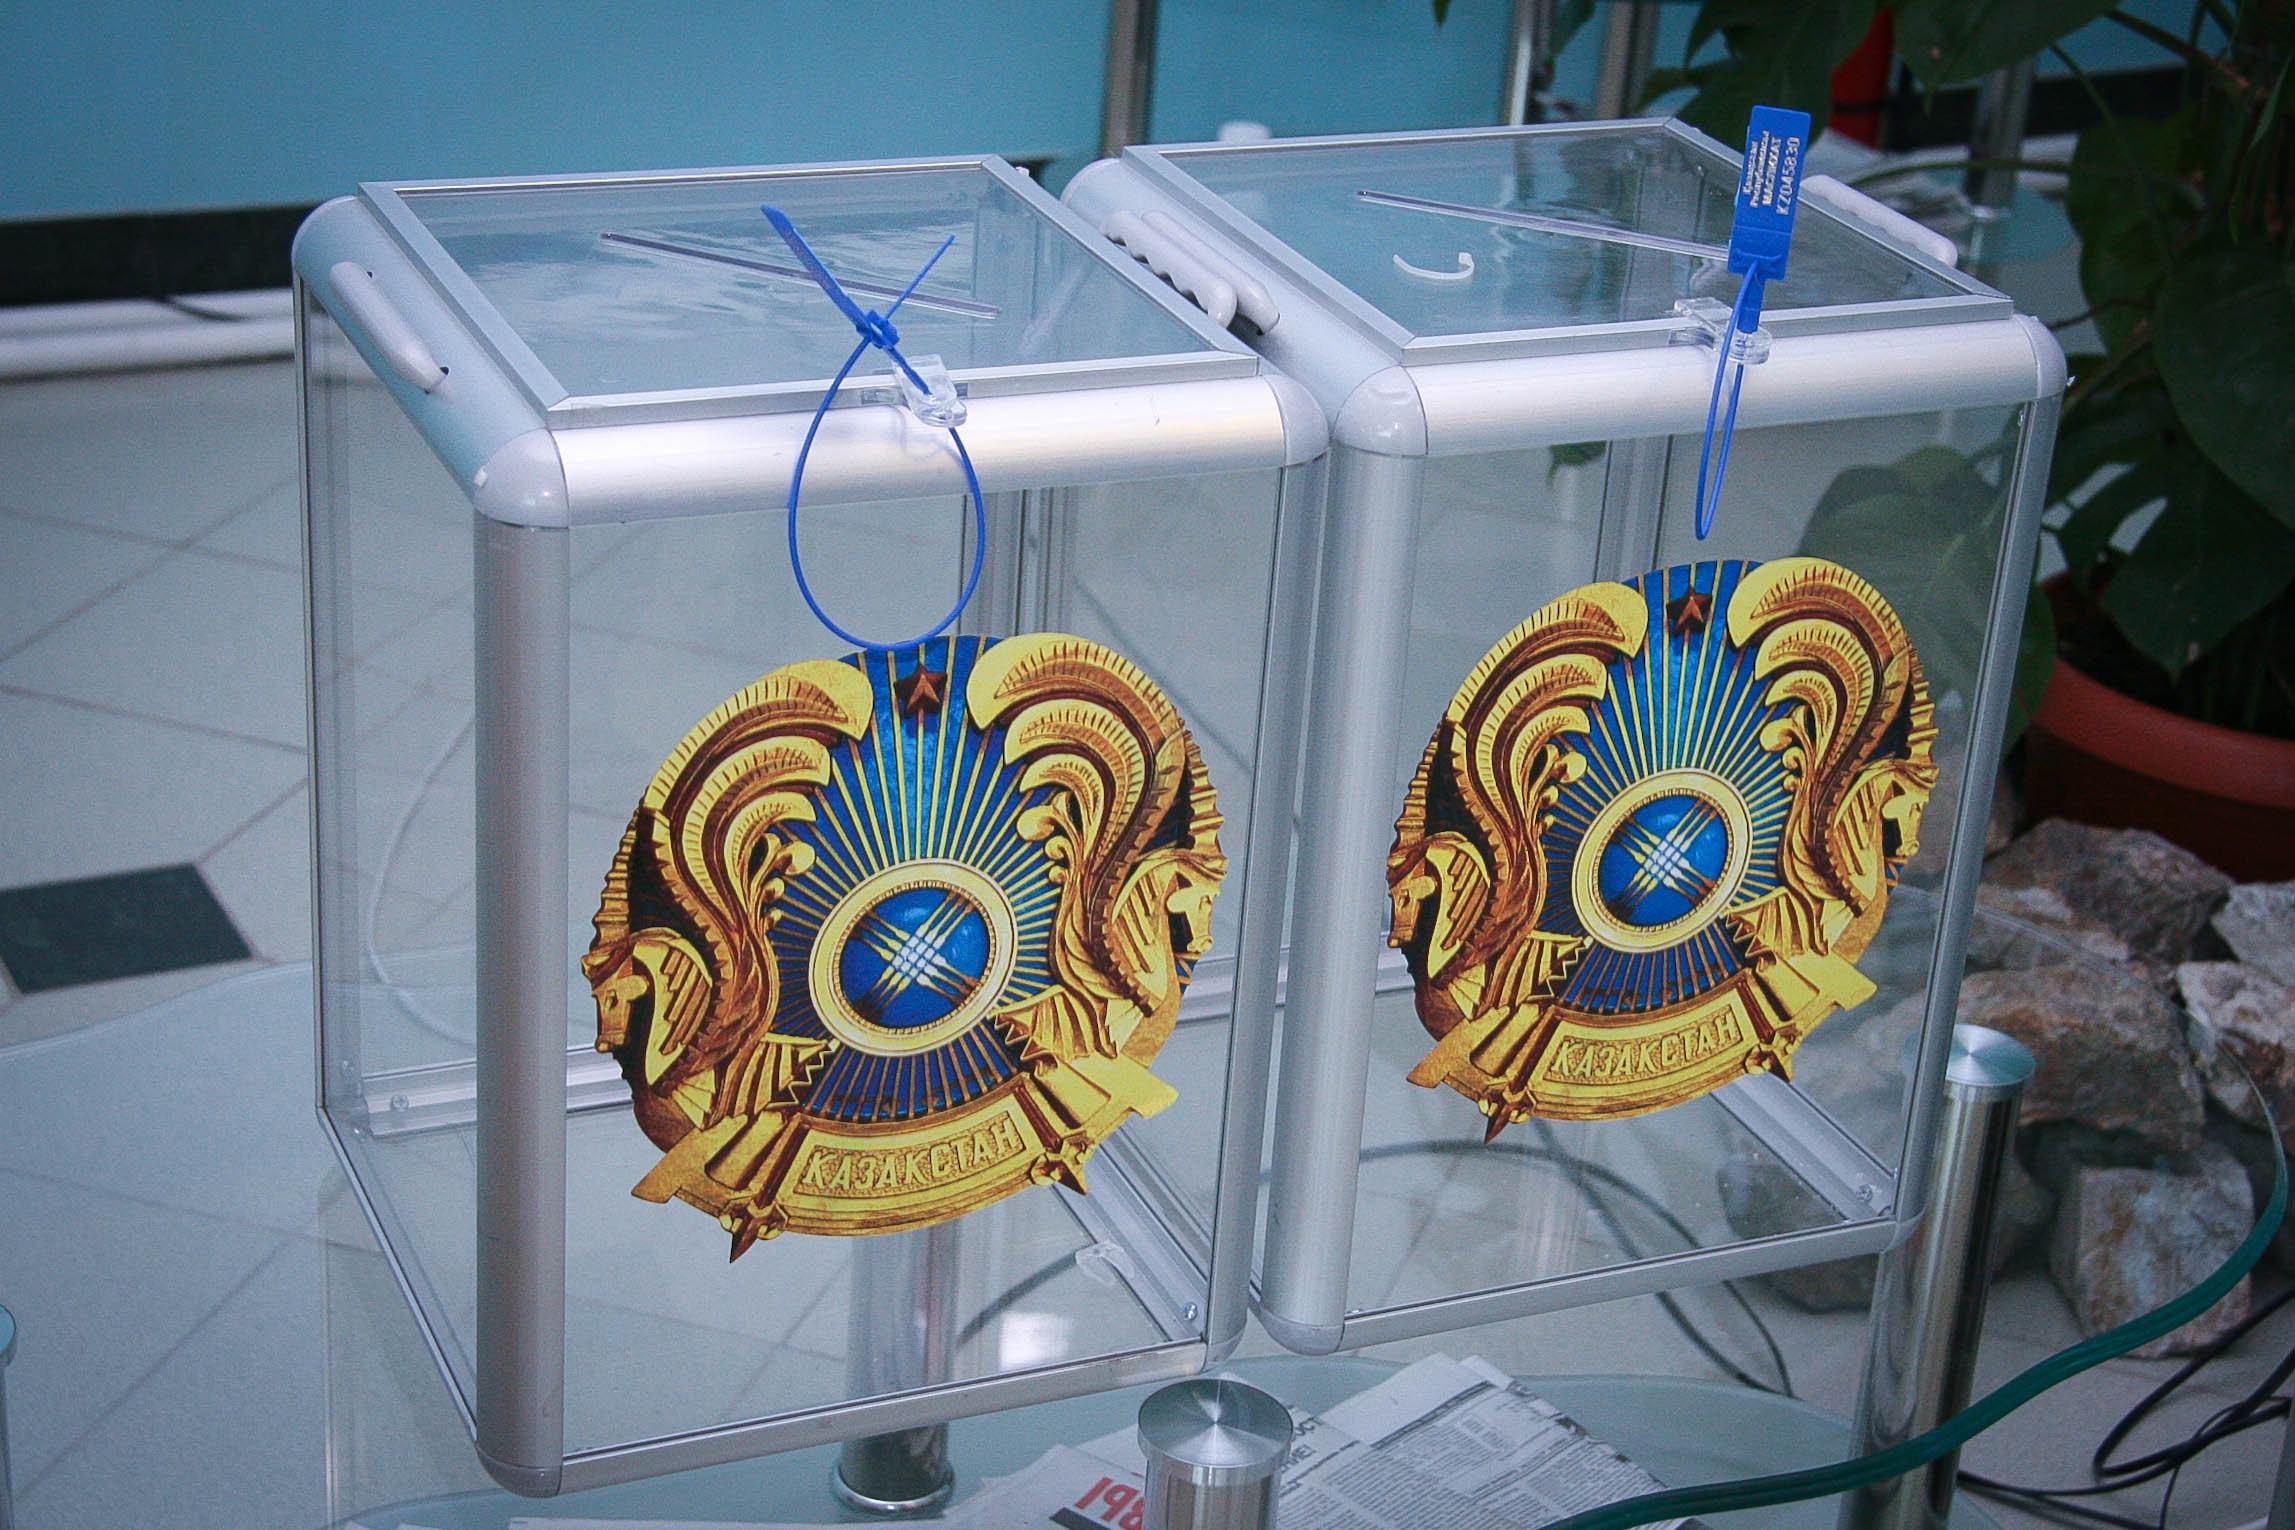 Явка казахстанцев на избирательном участке в Бельгии составила 71%